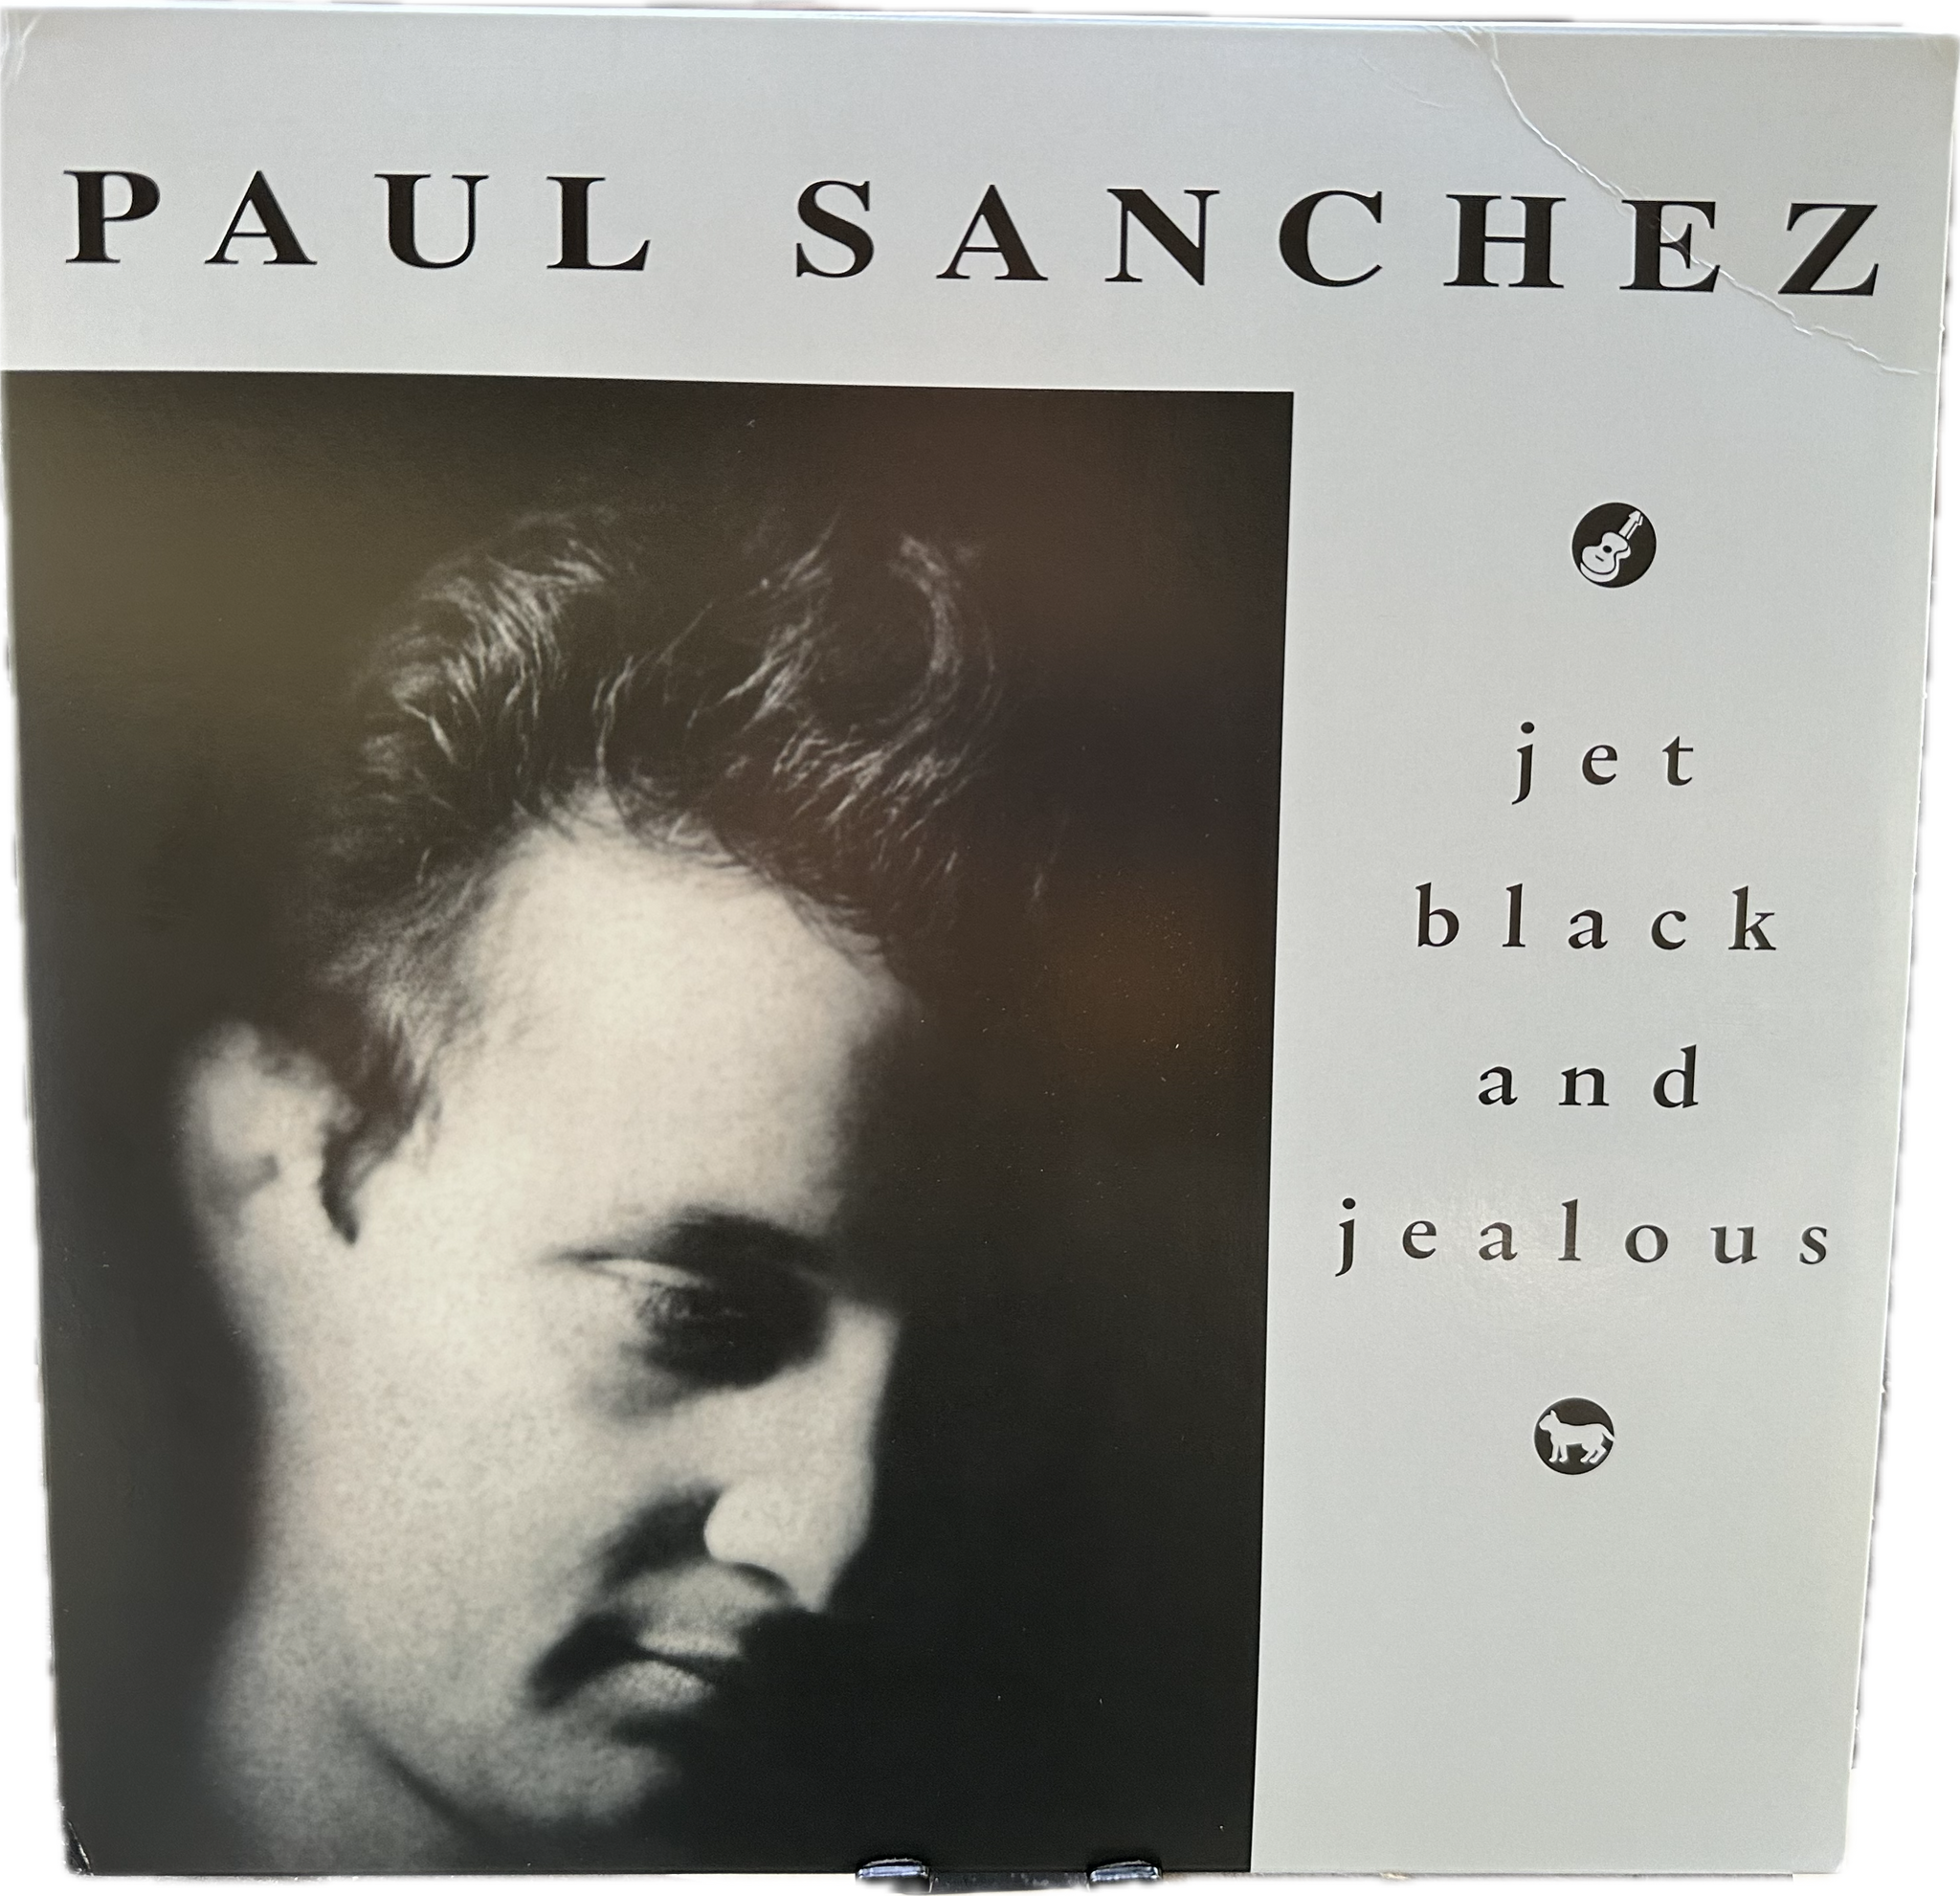 Paul Sanchez- "Jet Black and Jealous" LP